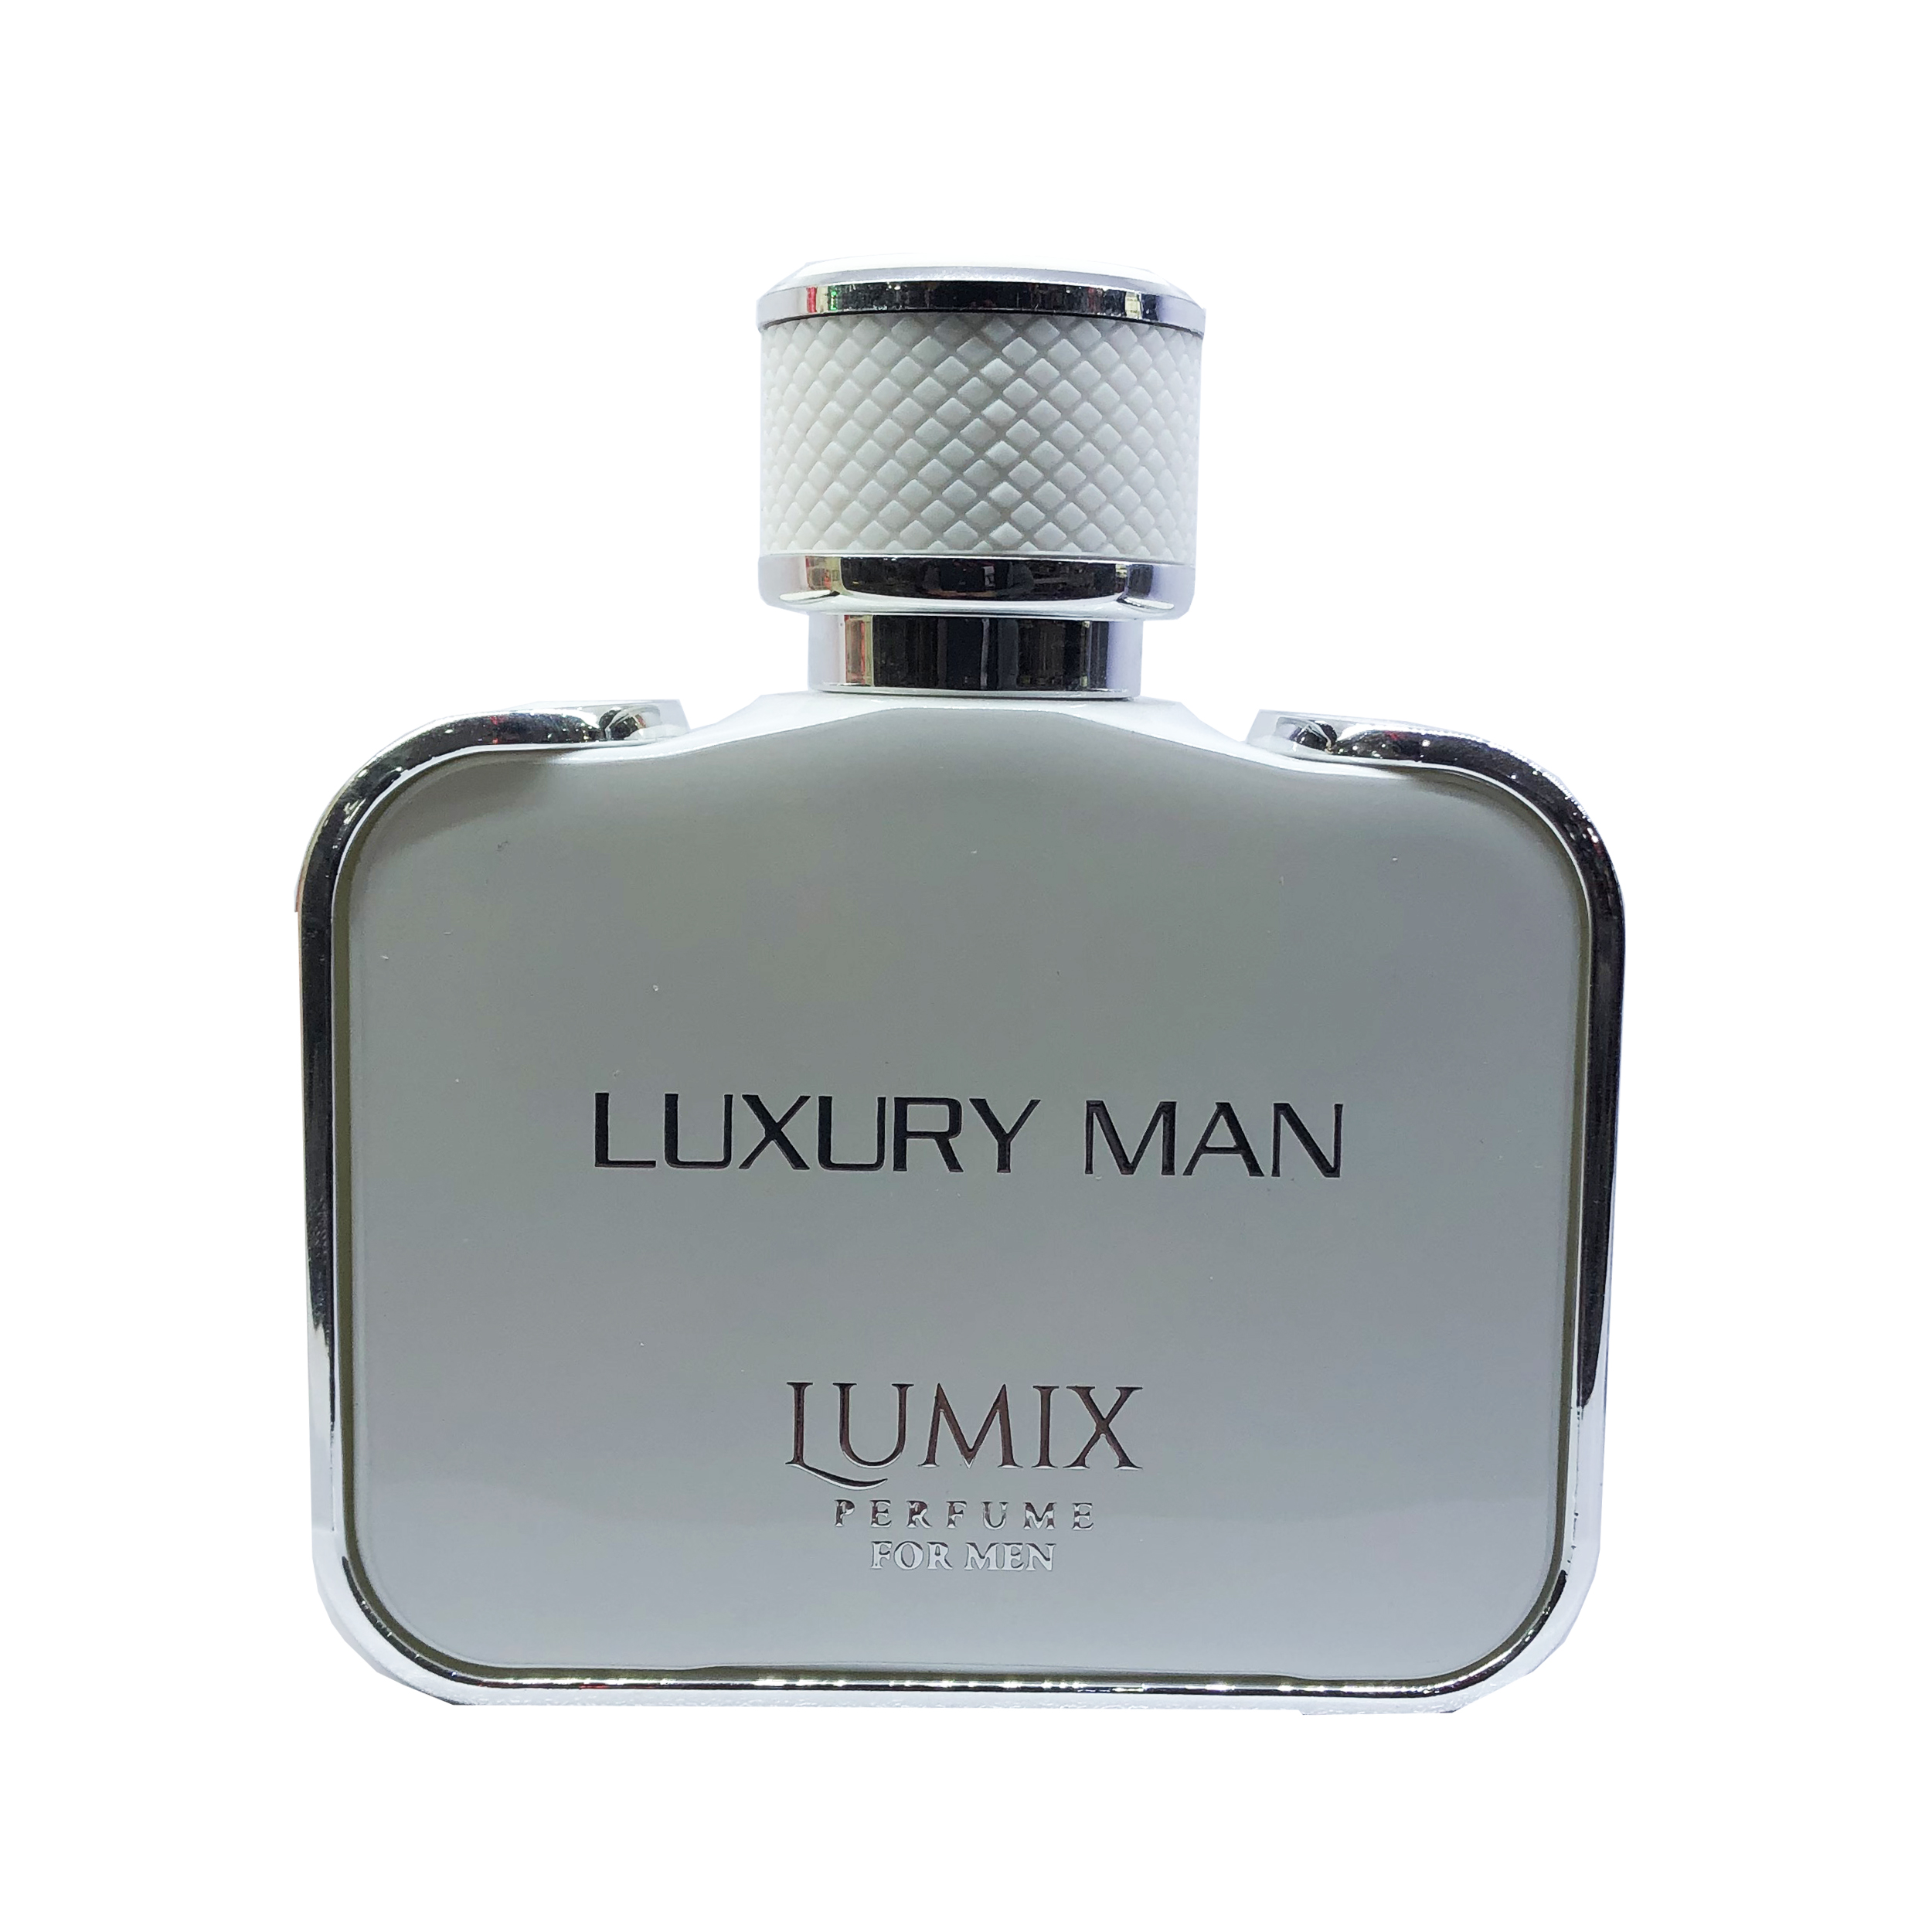 ادو پرفیوم مردانه بست گیت مدل Luxury Man حجم 100 میلی لیتر